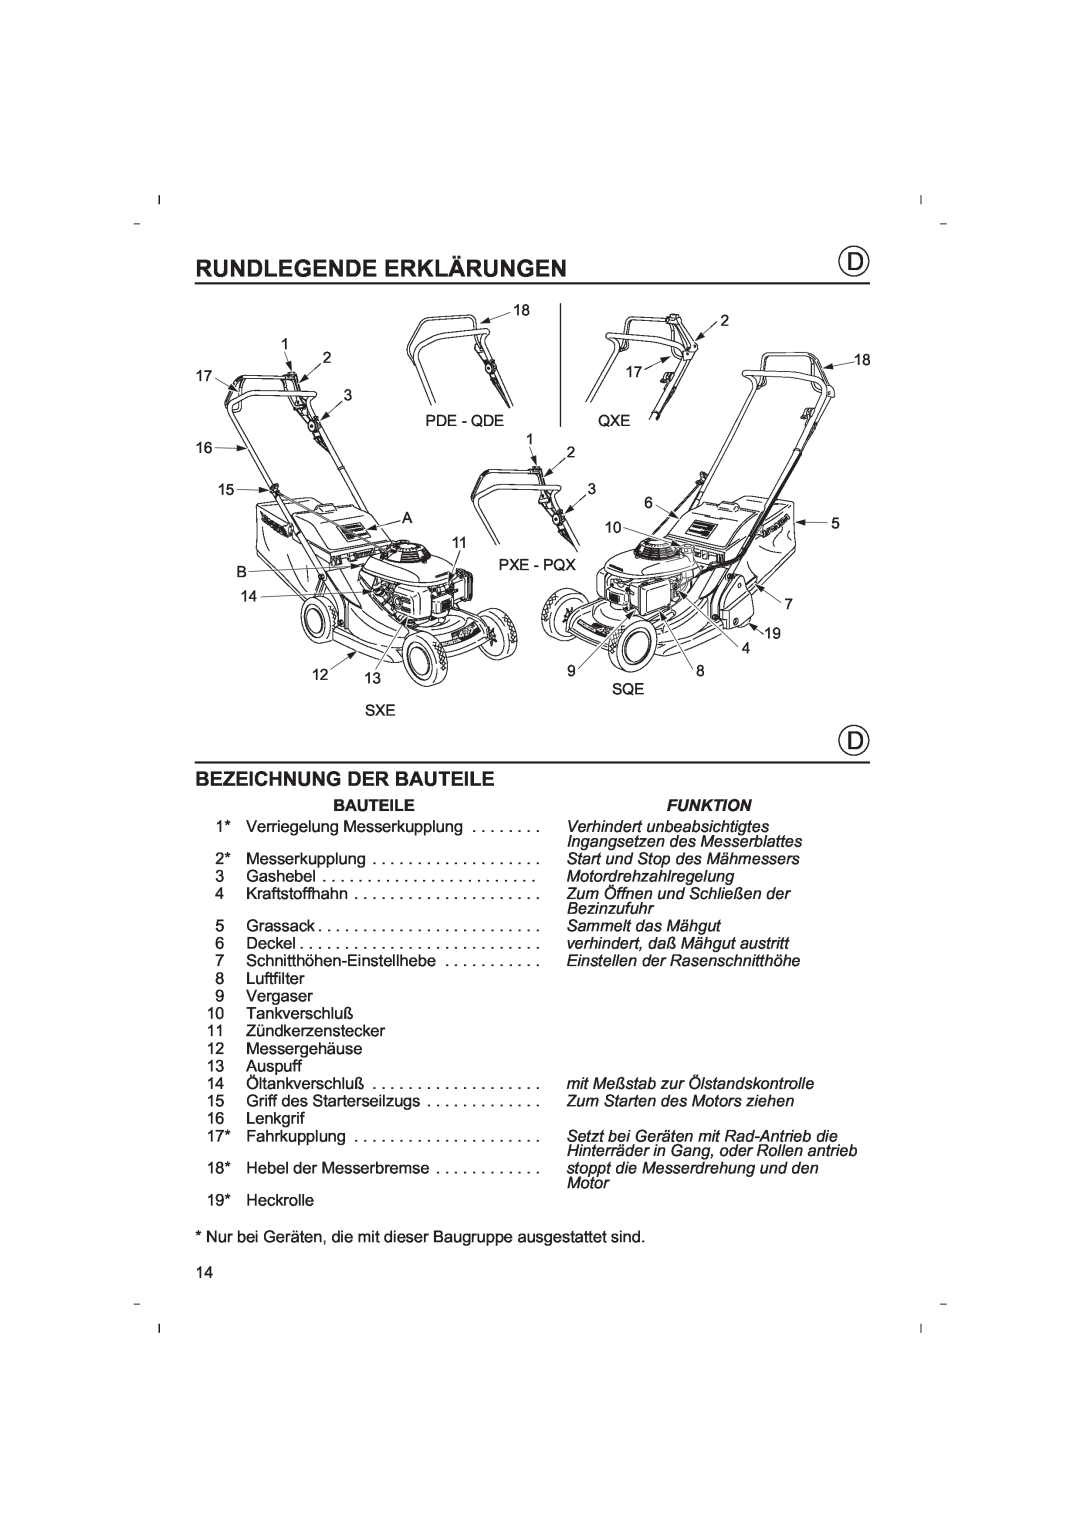 Honda Power Equipment HRB425C owner manual Rundlegende Erklärungen, Bezeichnung Der Bauteile 